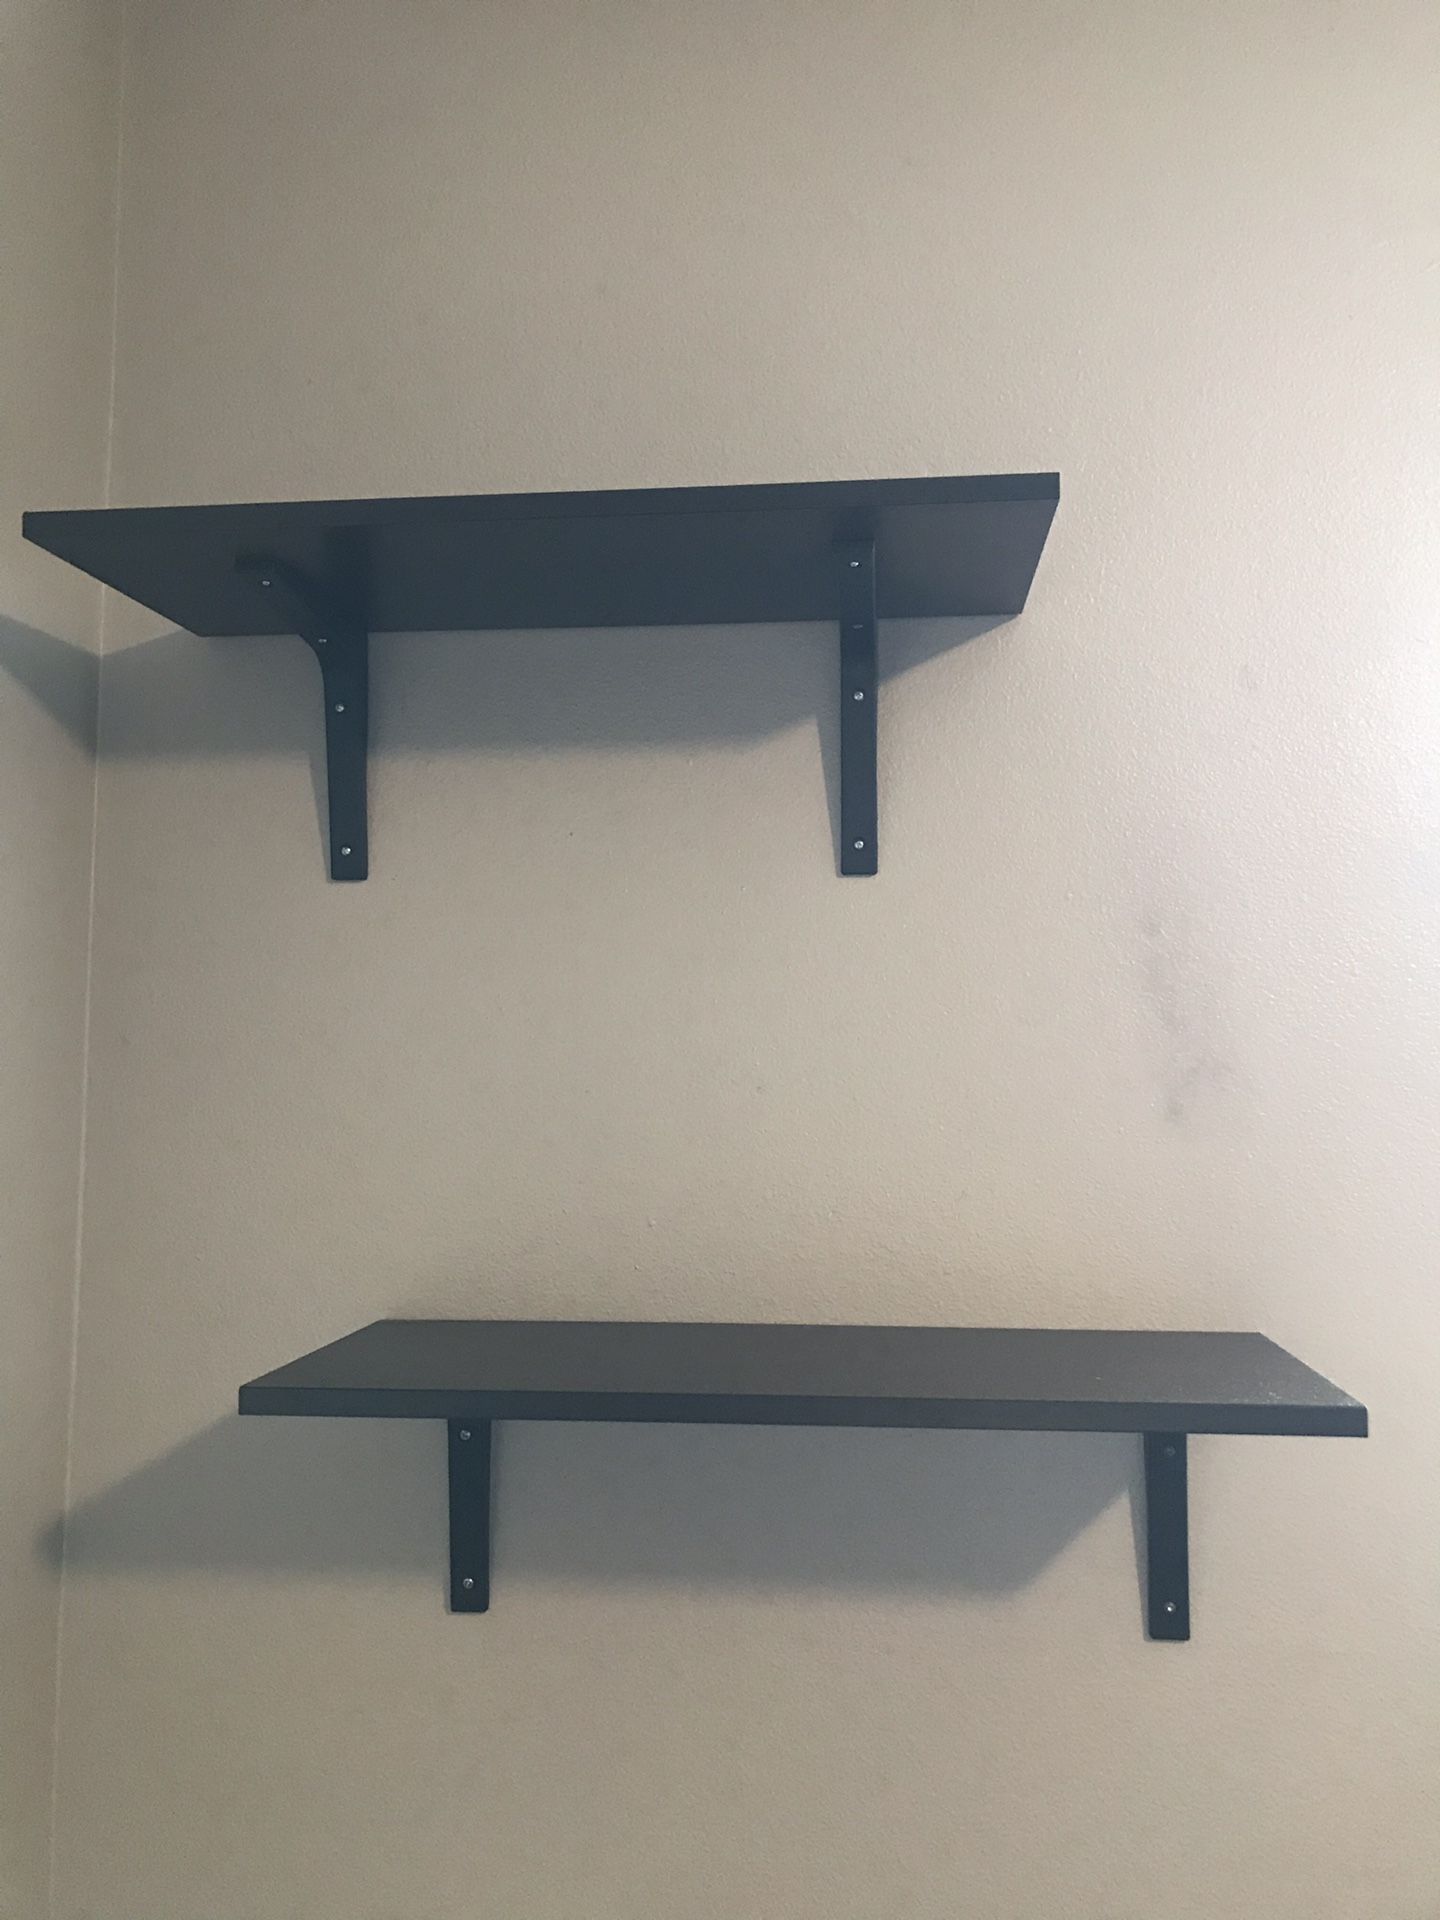 Black IKEA shelves